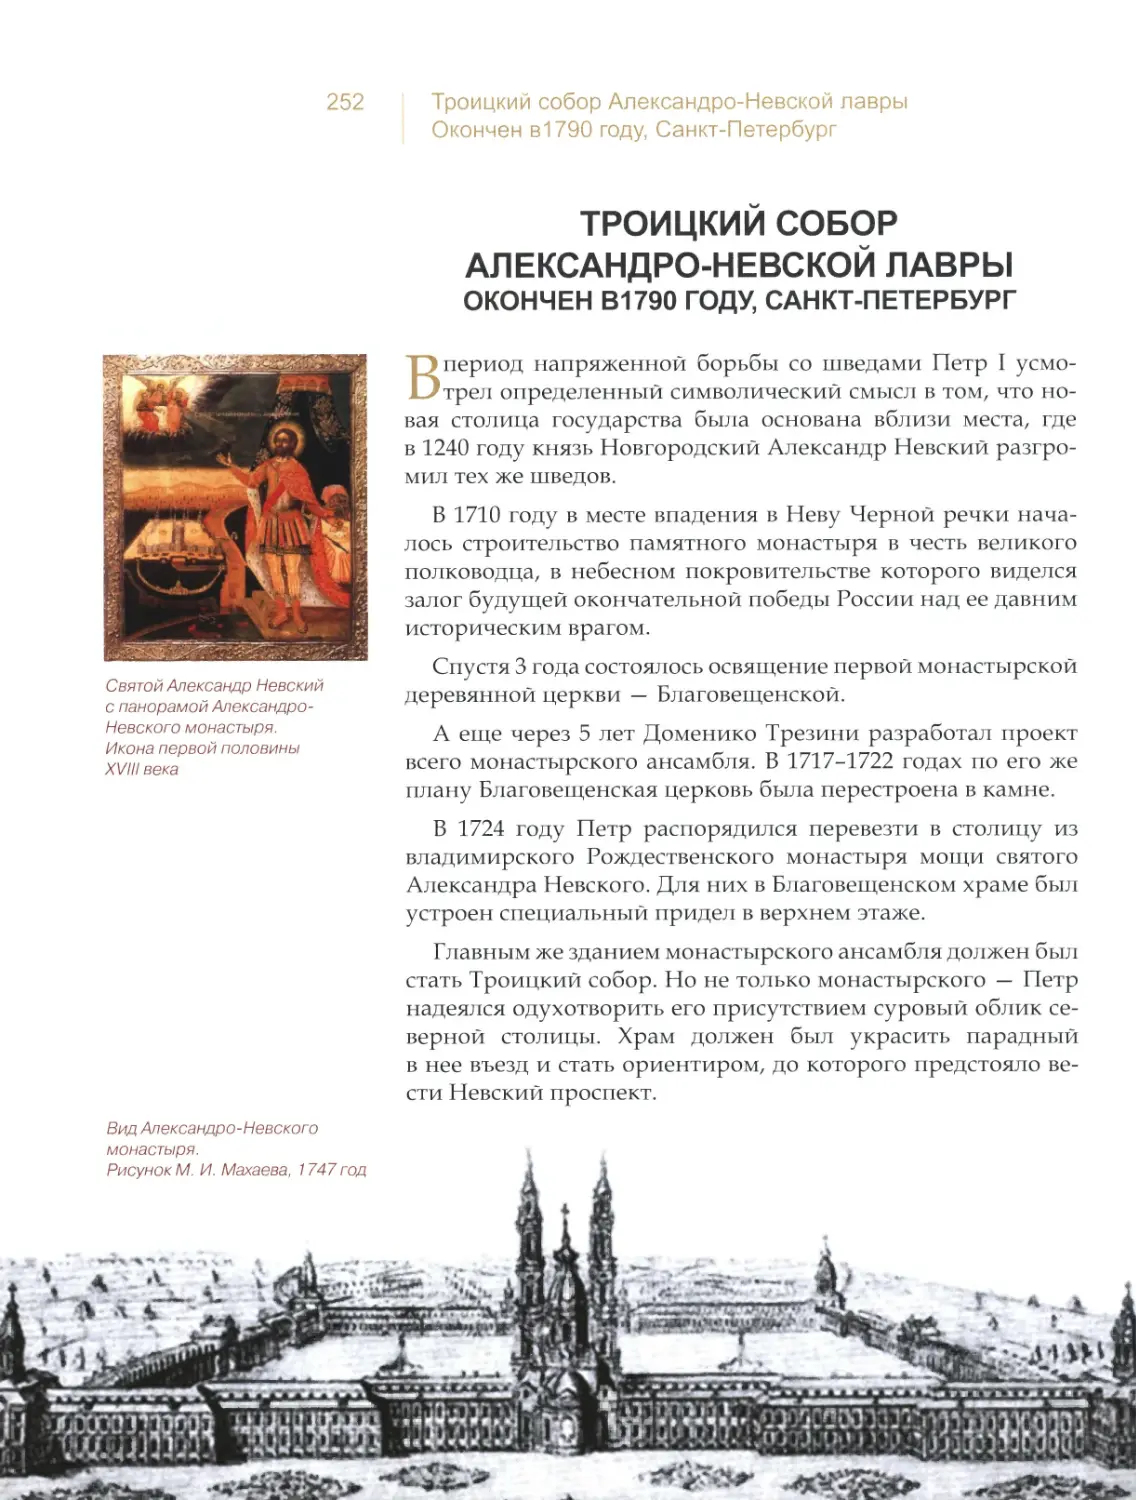 Троицкий собор Александро-Невской лавры, Санкт-Петербург